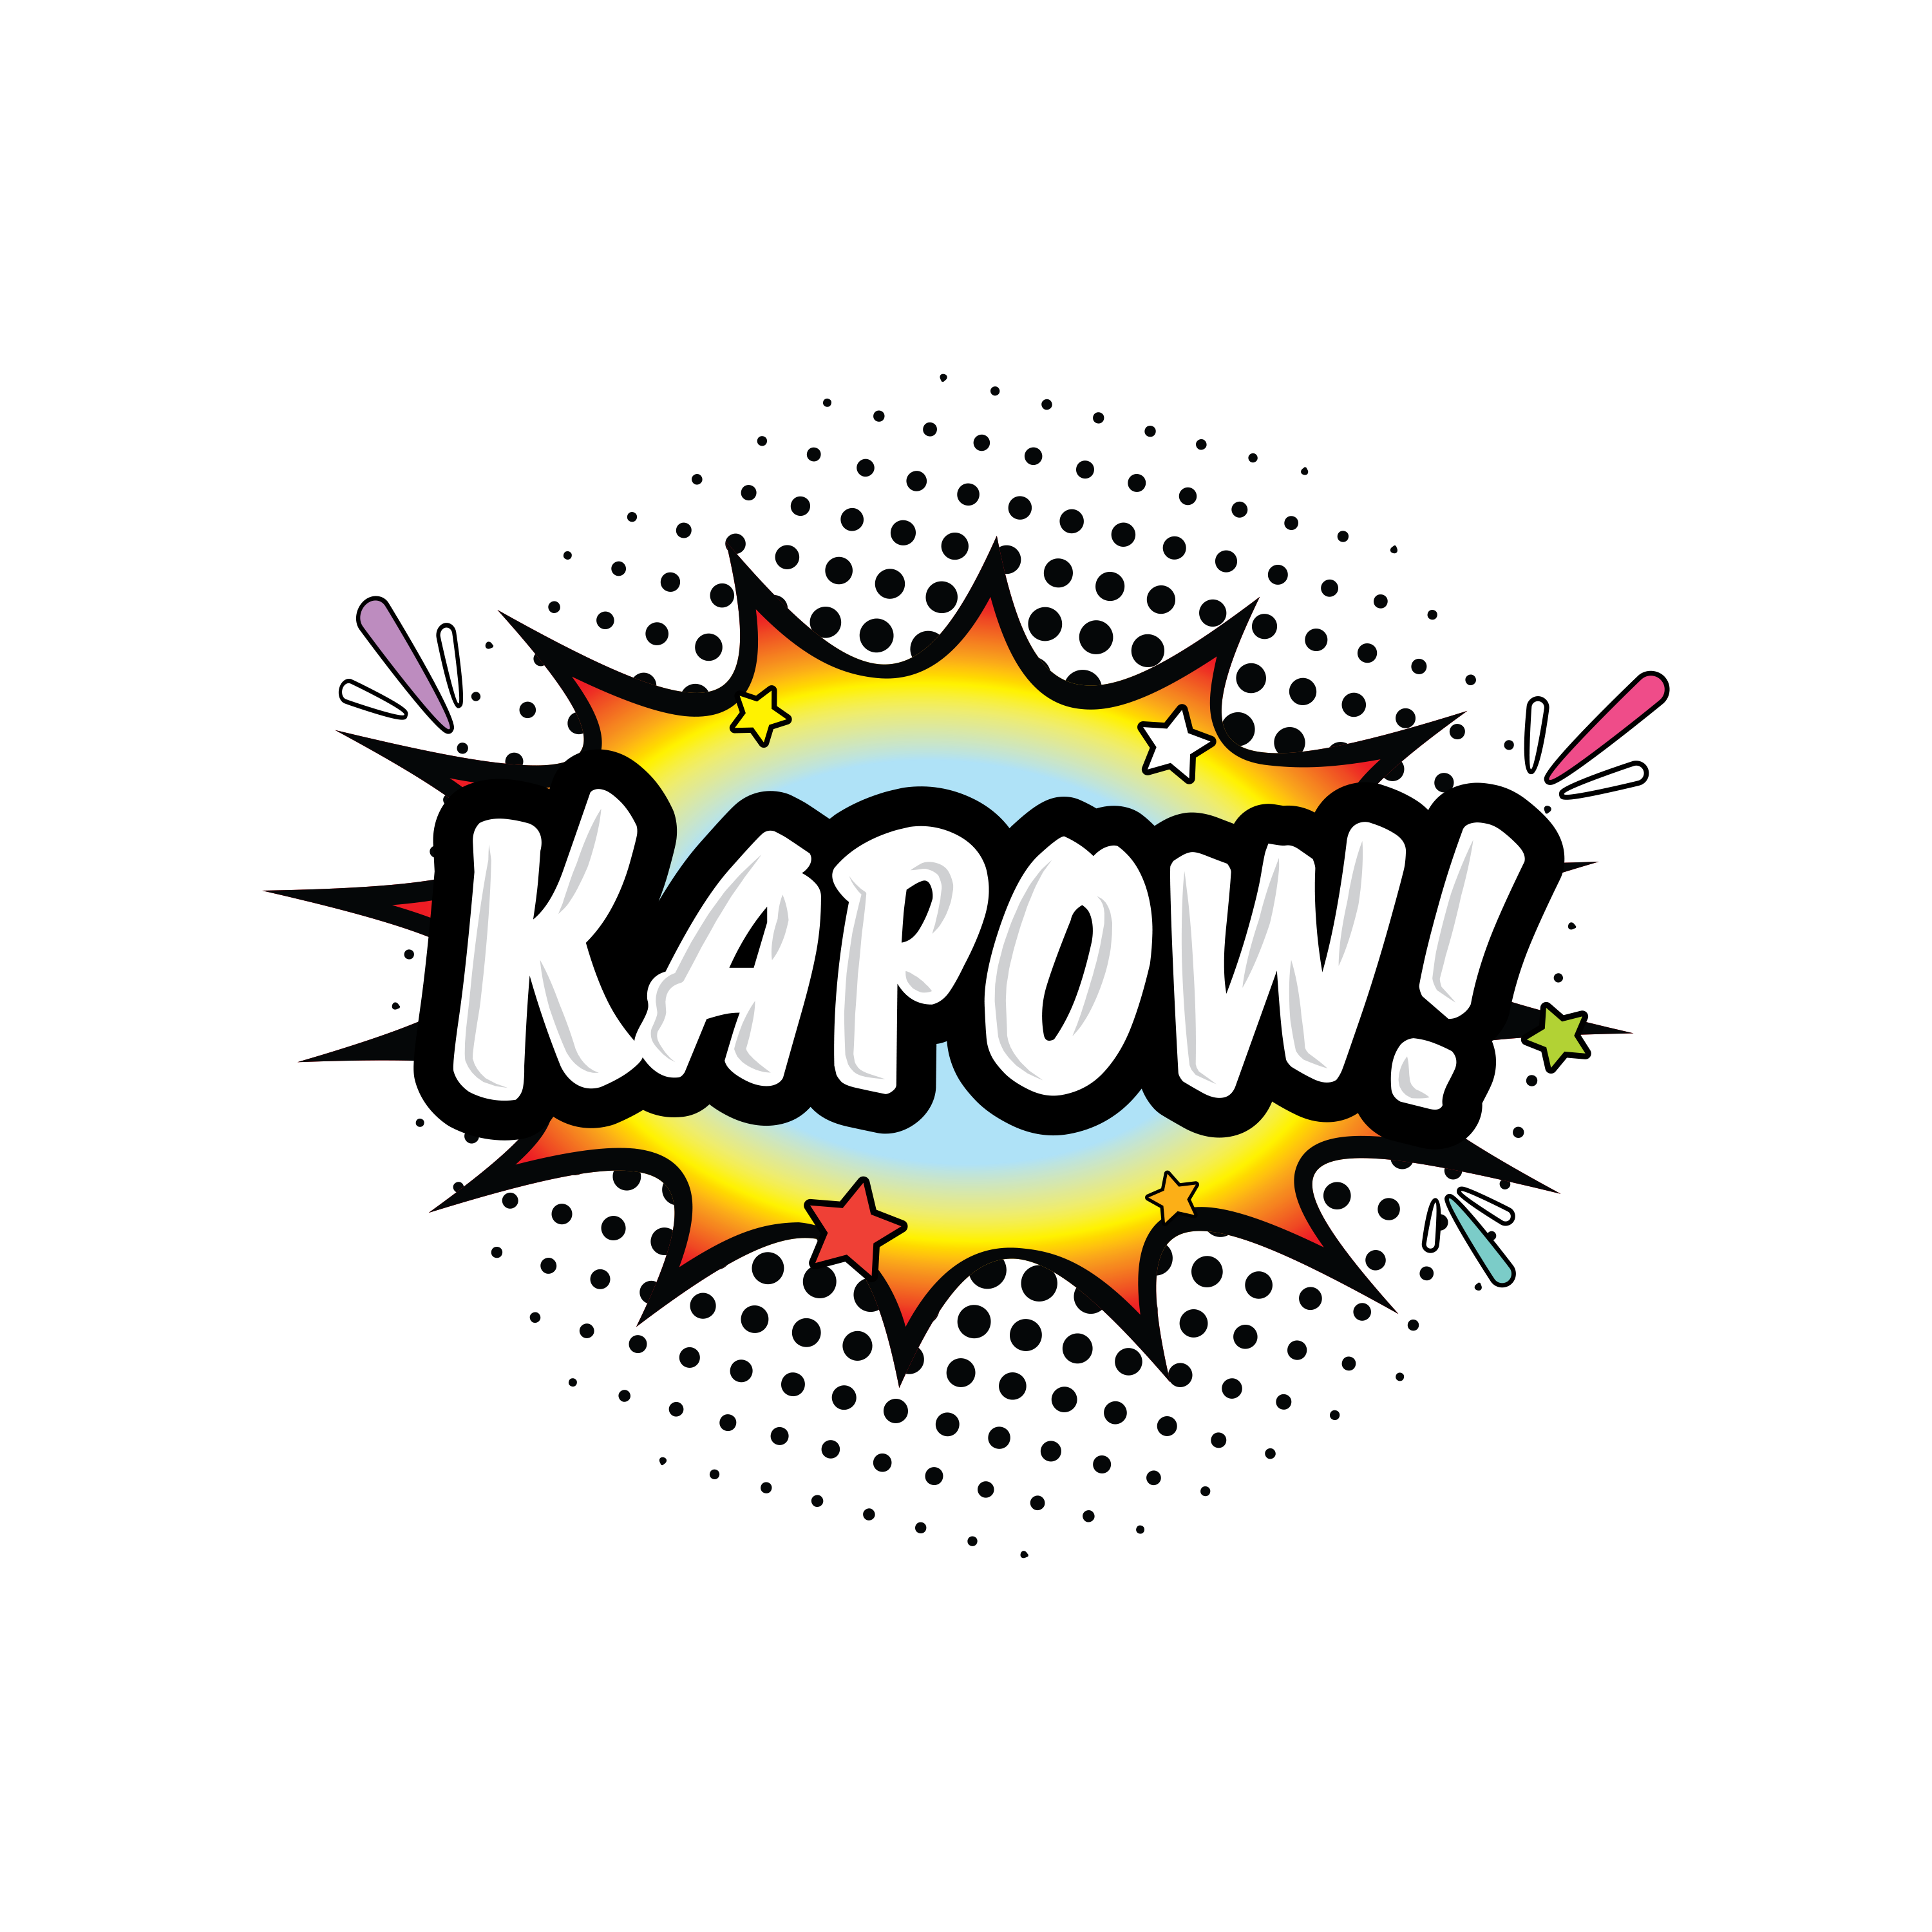 Kapow(1)